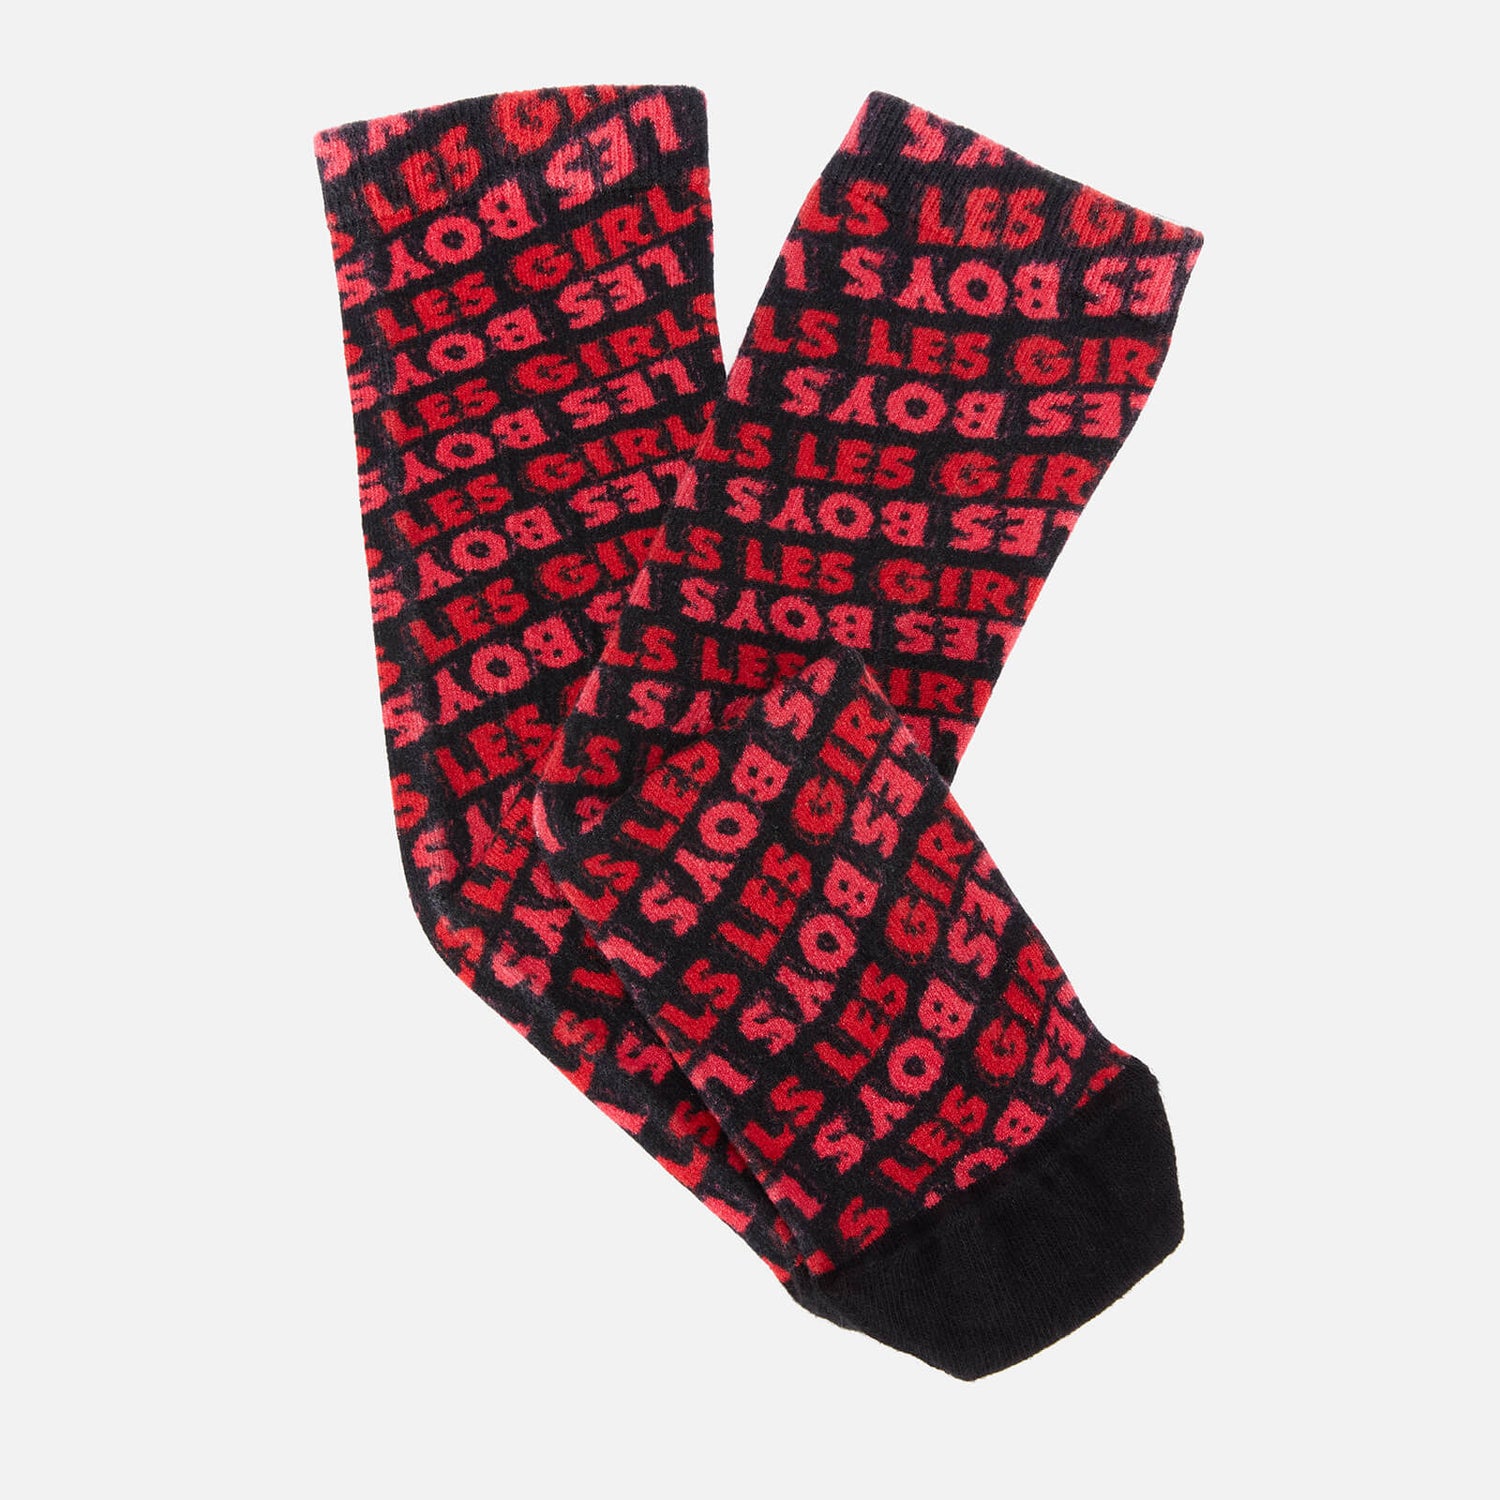 Les Girls Les Boys Women's Lglb Allover Fuzzy Print Socks - Red